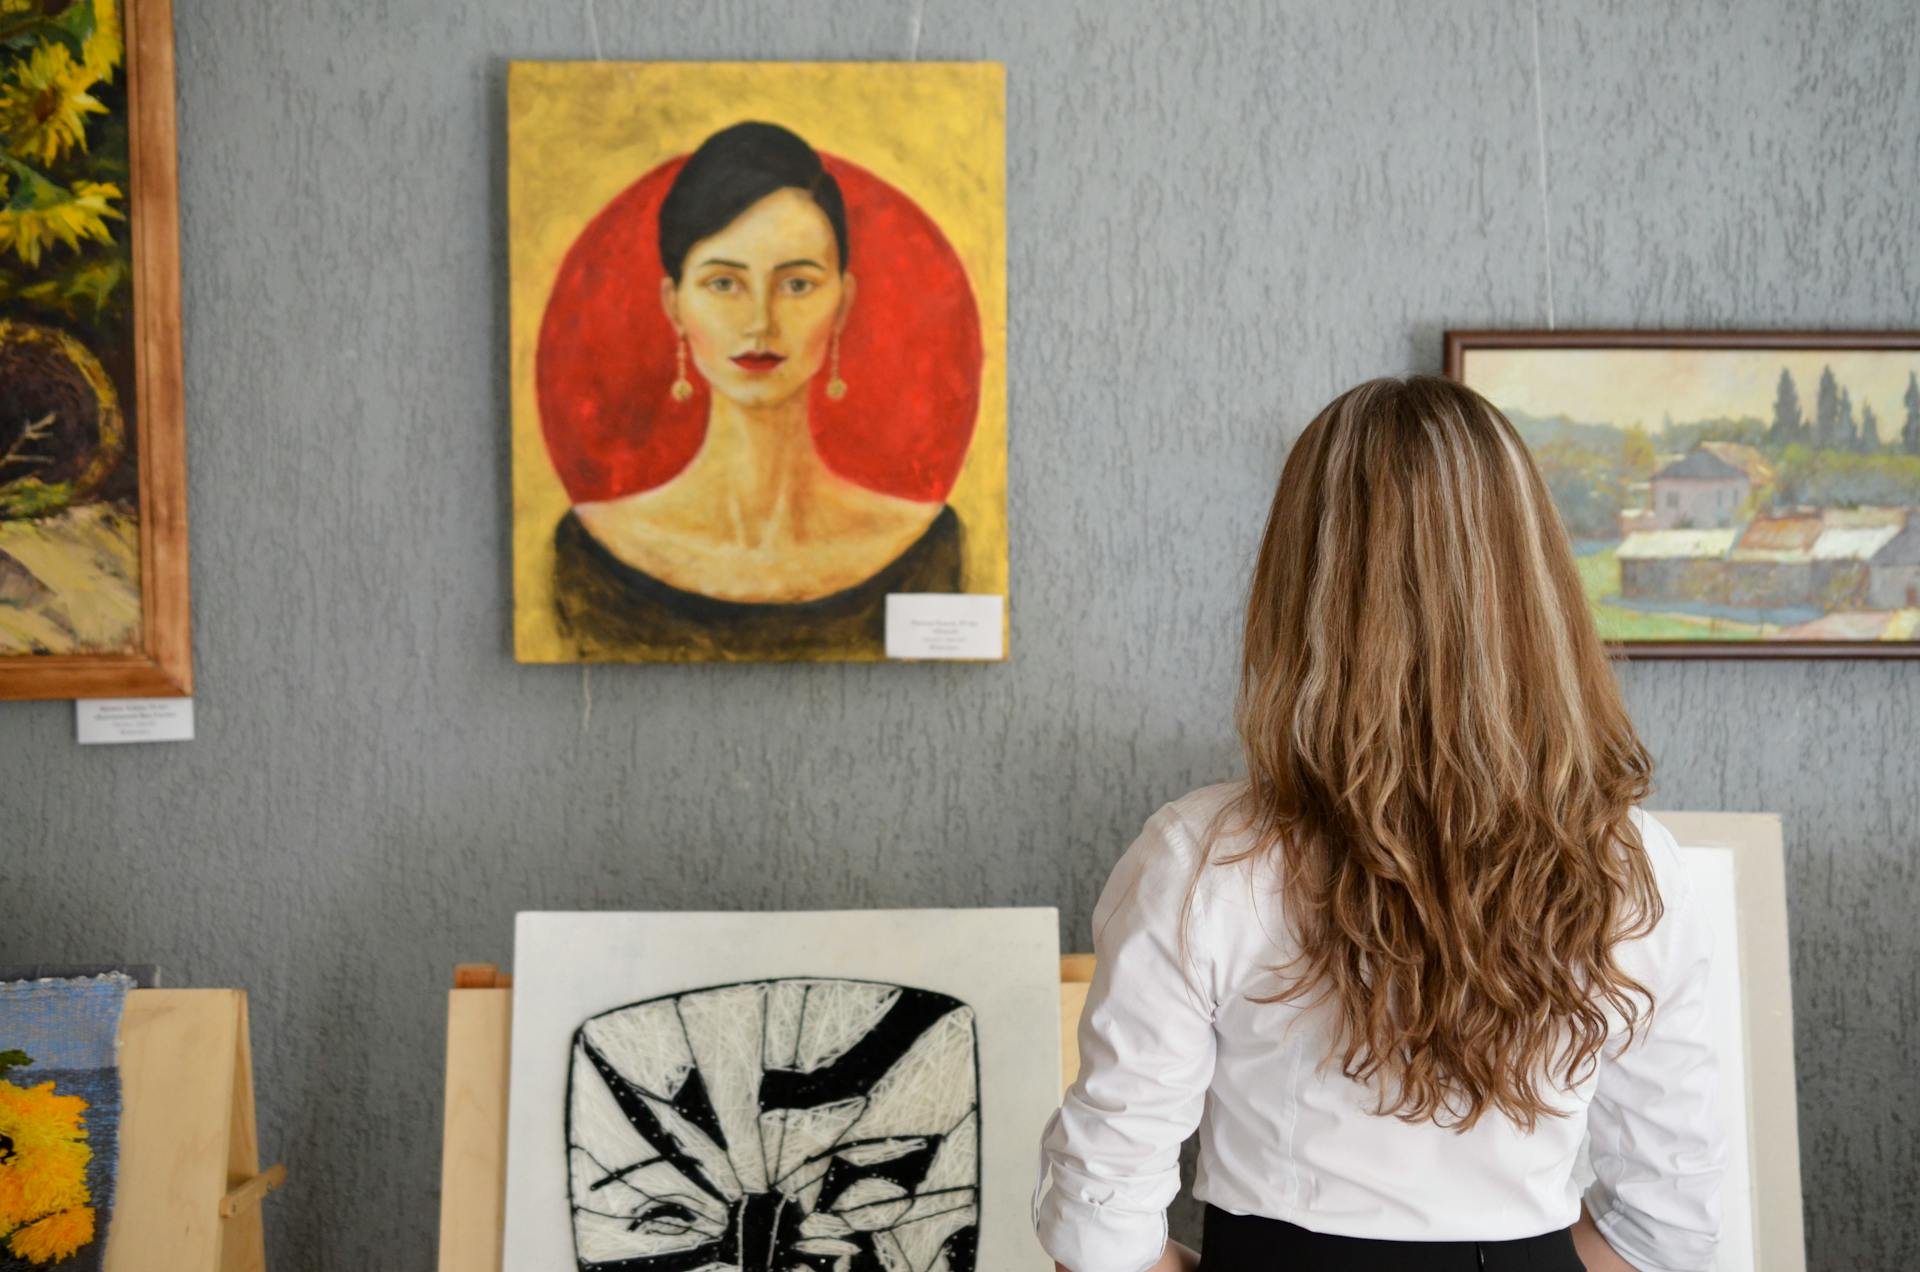 Una joven mirando cuadros expuestos en una pared | Fuente: Pexels